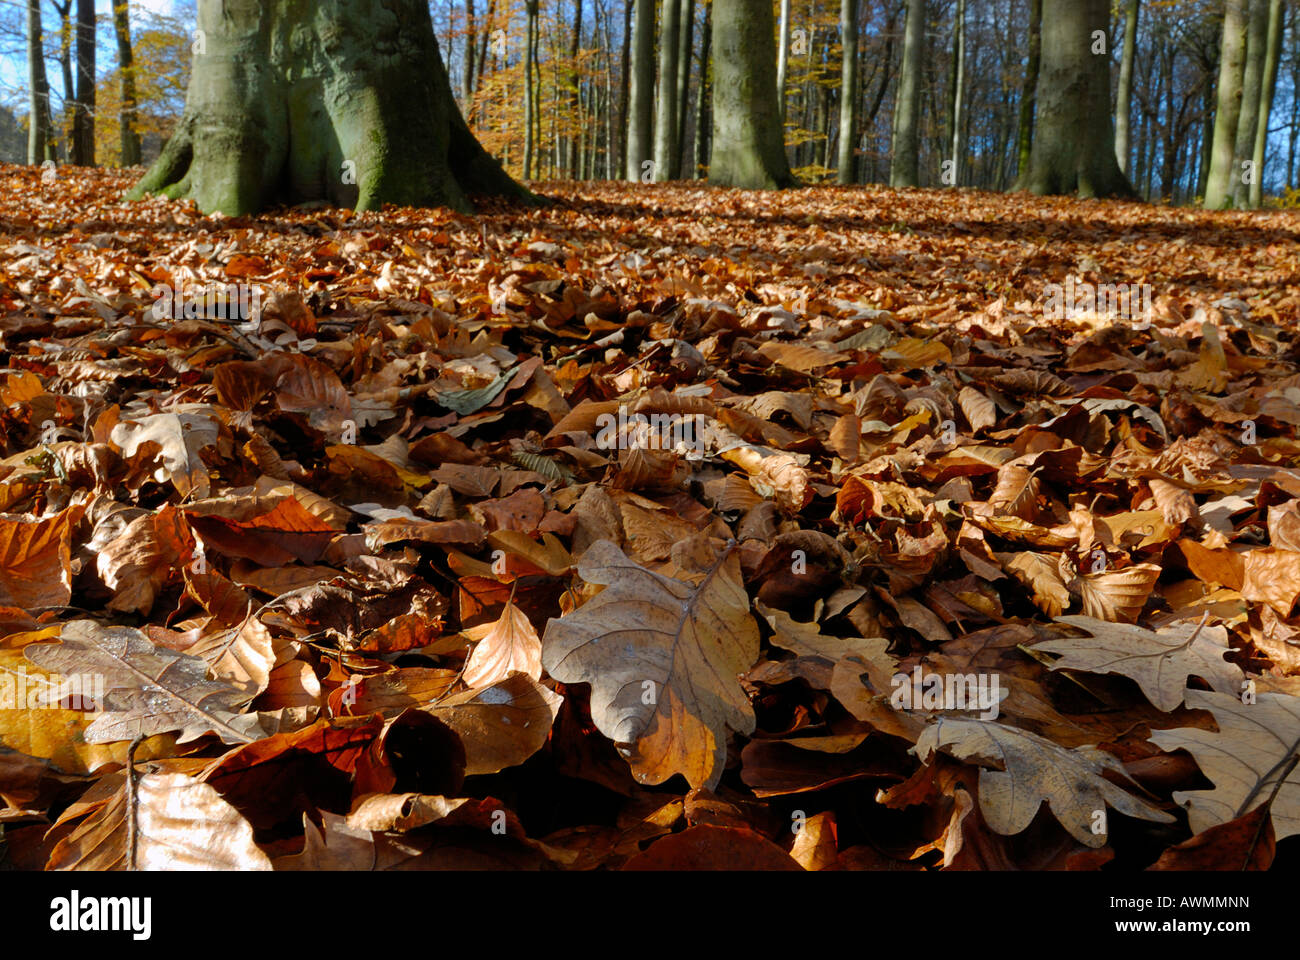 Forest with leaf litter in autumn, Kiel, Schleswig-Holstein, Deutschland Stock Photo